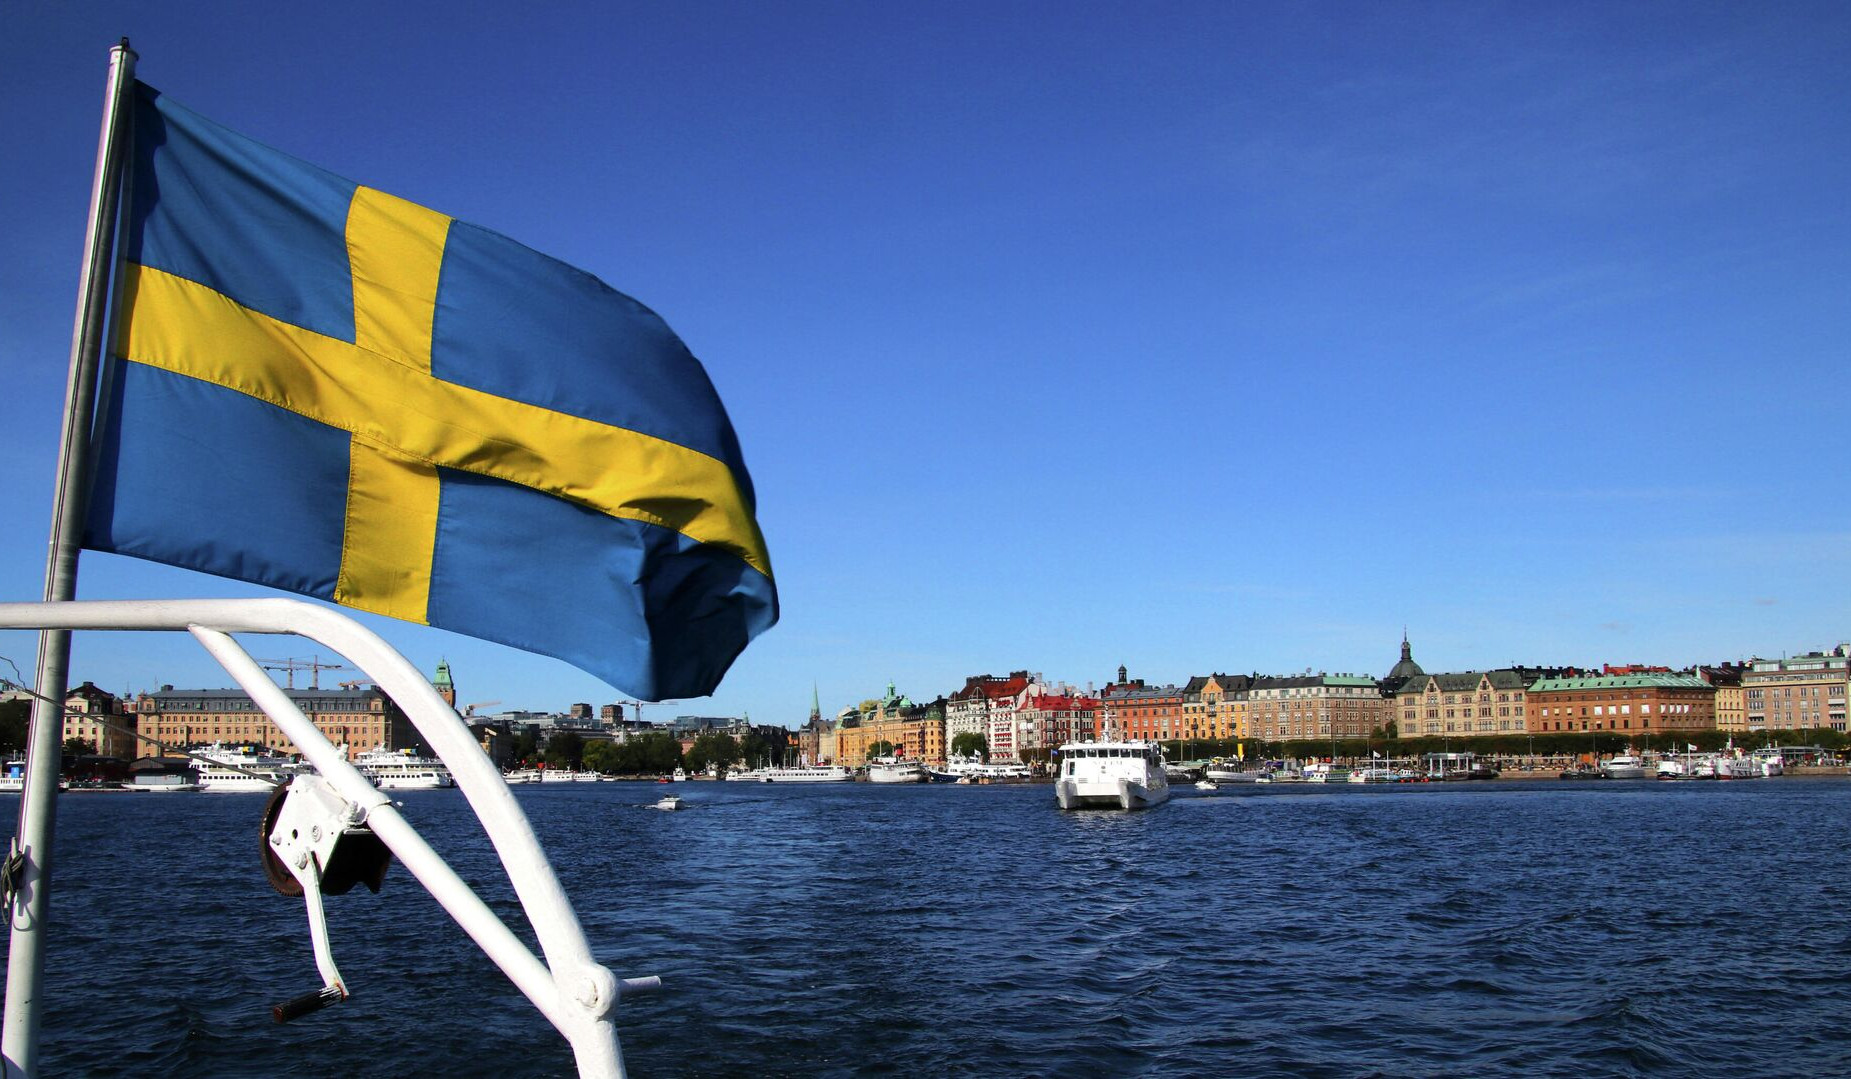 Շվեդիան դադարեցրել է Թուրքիայի հետ բանակցությունները ՆԱՏՕ-ին անդամակցելու շուրջ